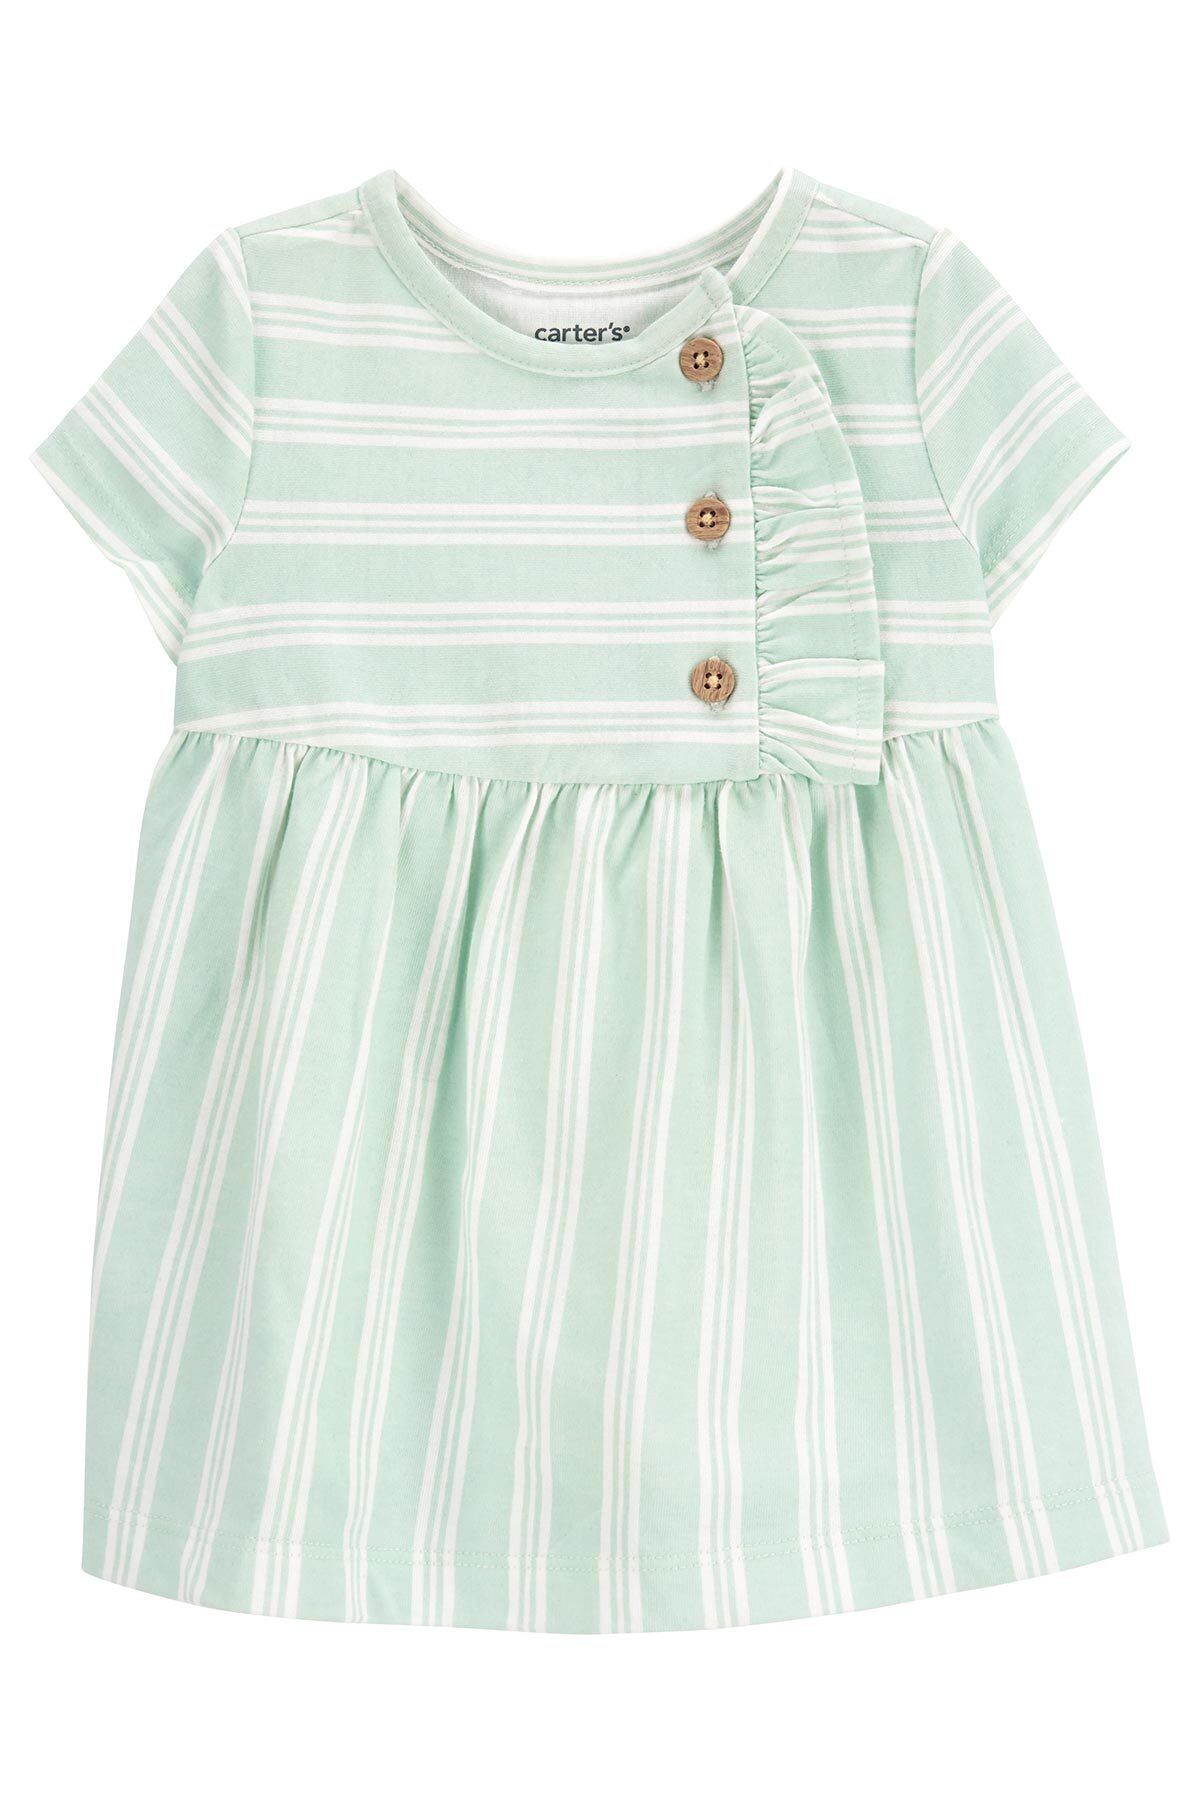 Carter's Kız Bebek Kısa Kollu Elbise Yeşil